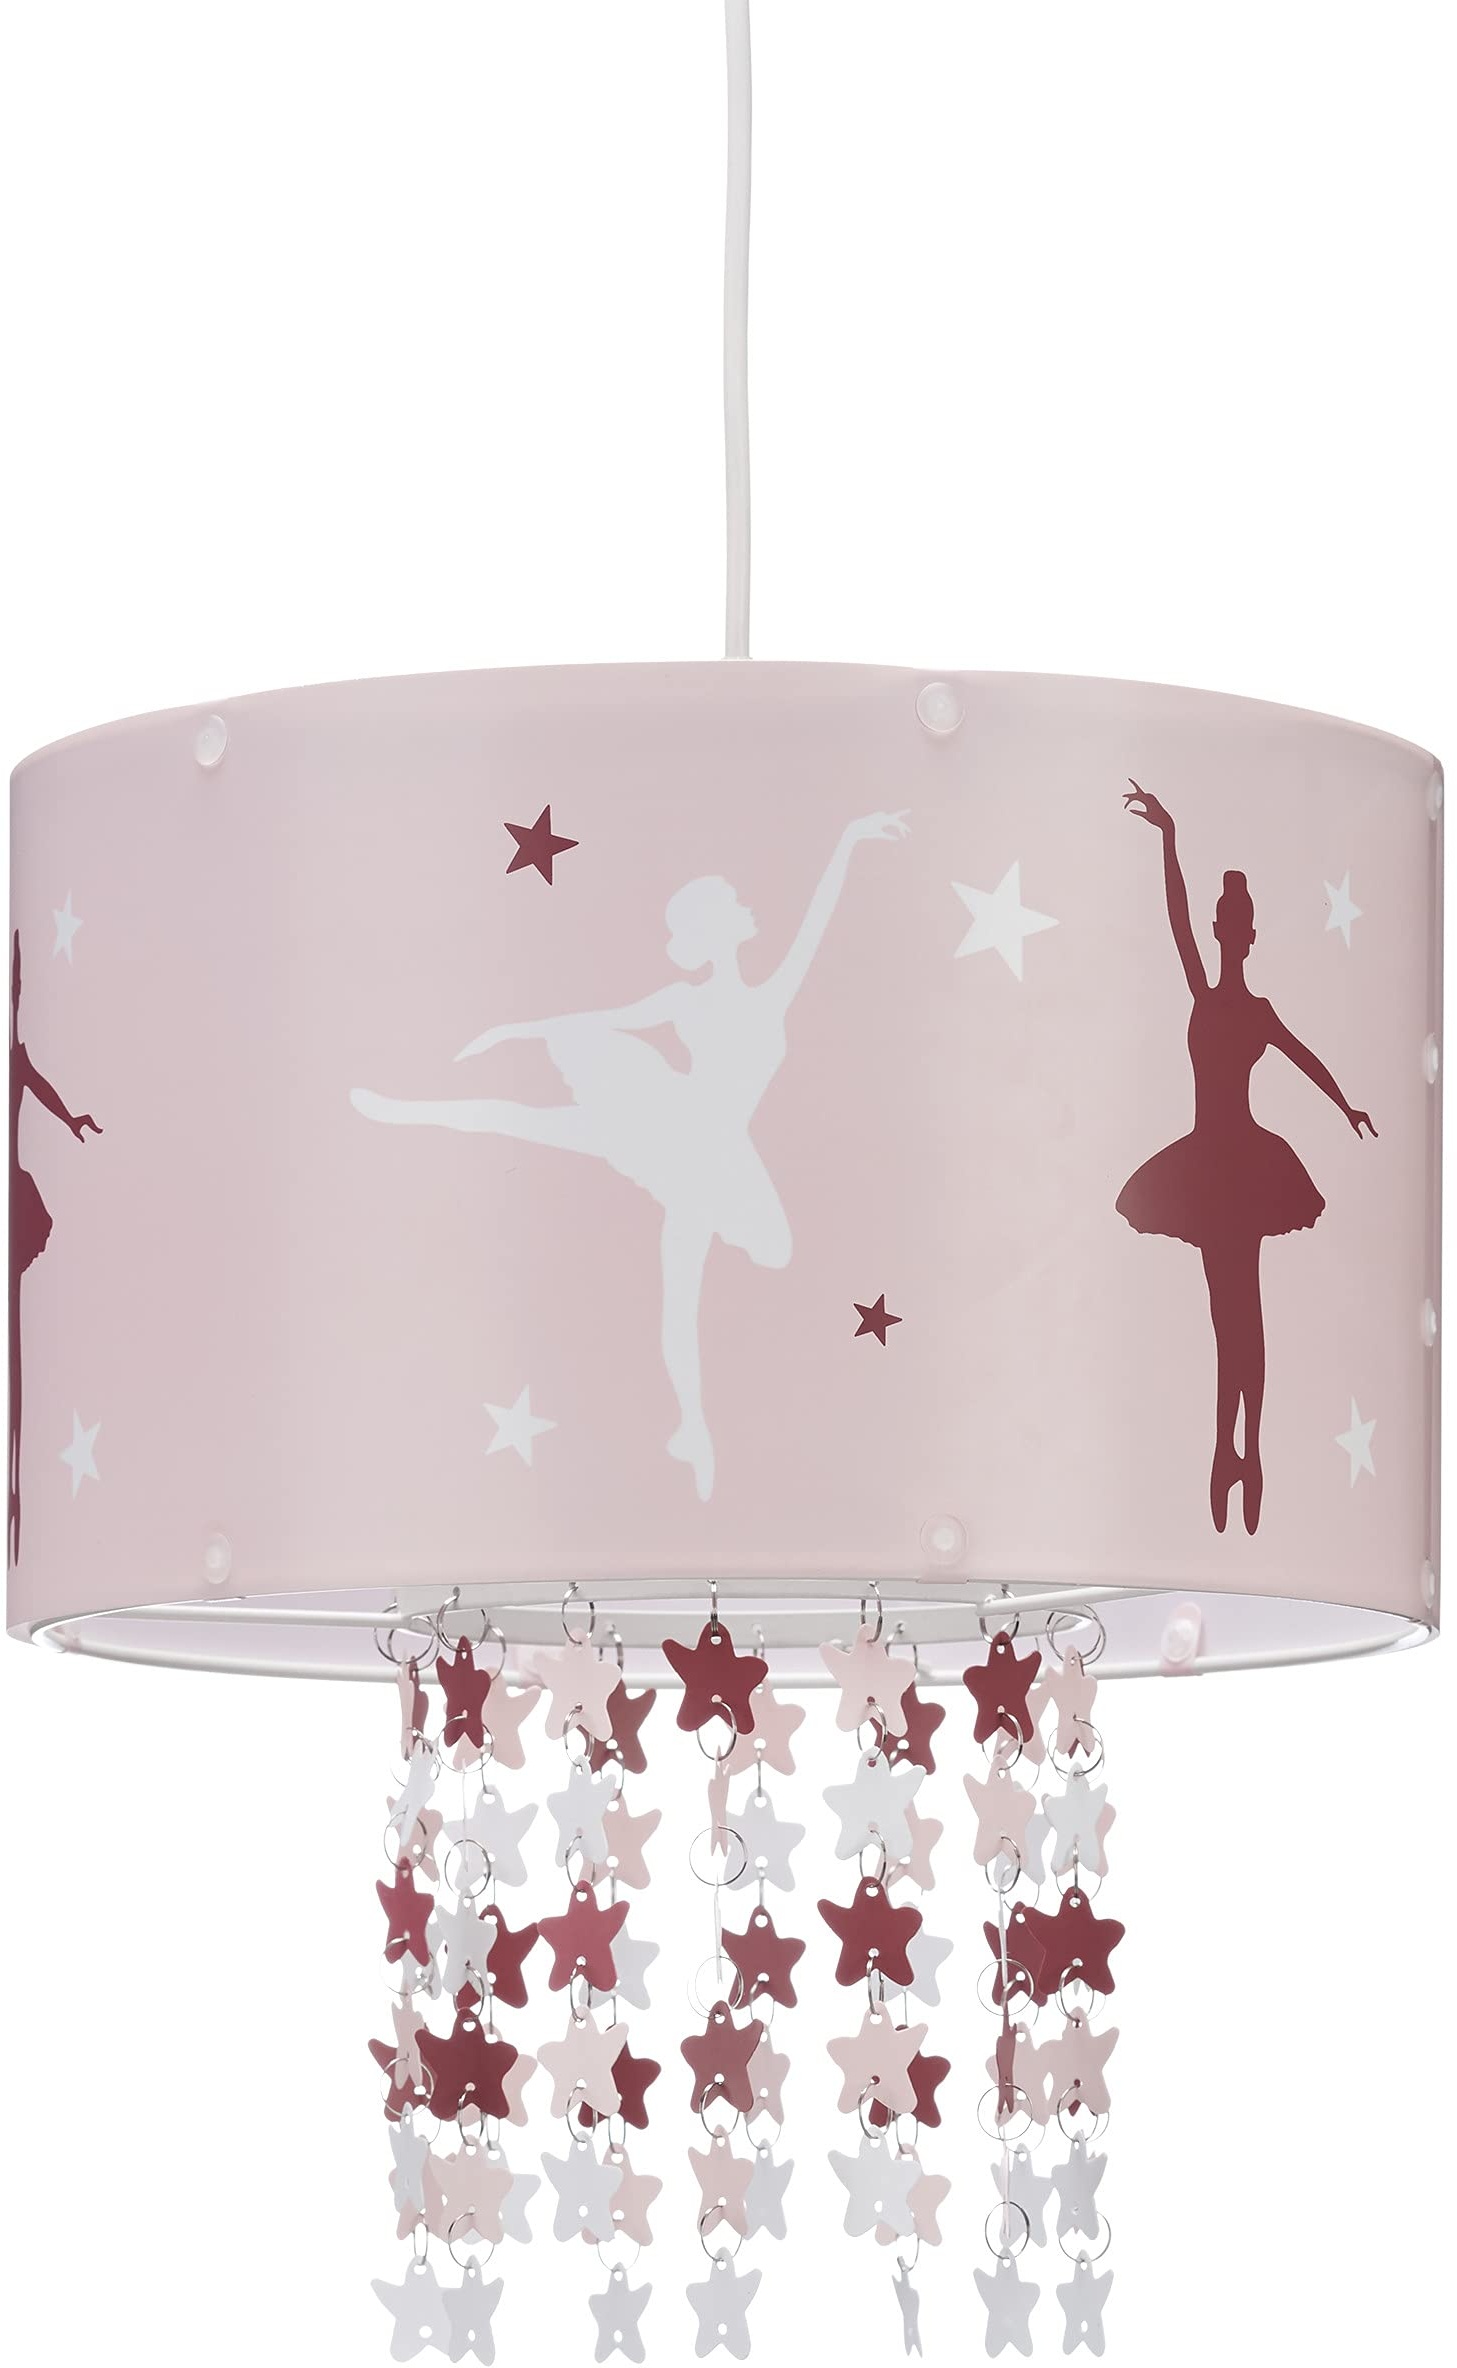 Relaxdays Hängelampe für Mädchen, Kinderlampe m. Ballerina Motiv, Pendelleuchte m. Stern-Mobile f. Kinderzimmer, rosa, 30 x 30 x 140 cm